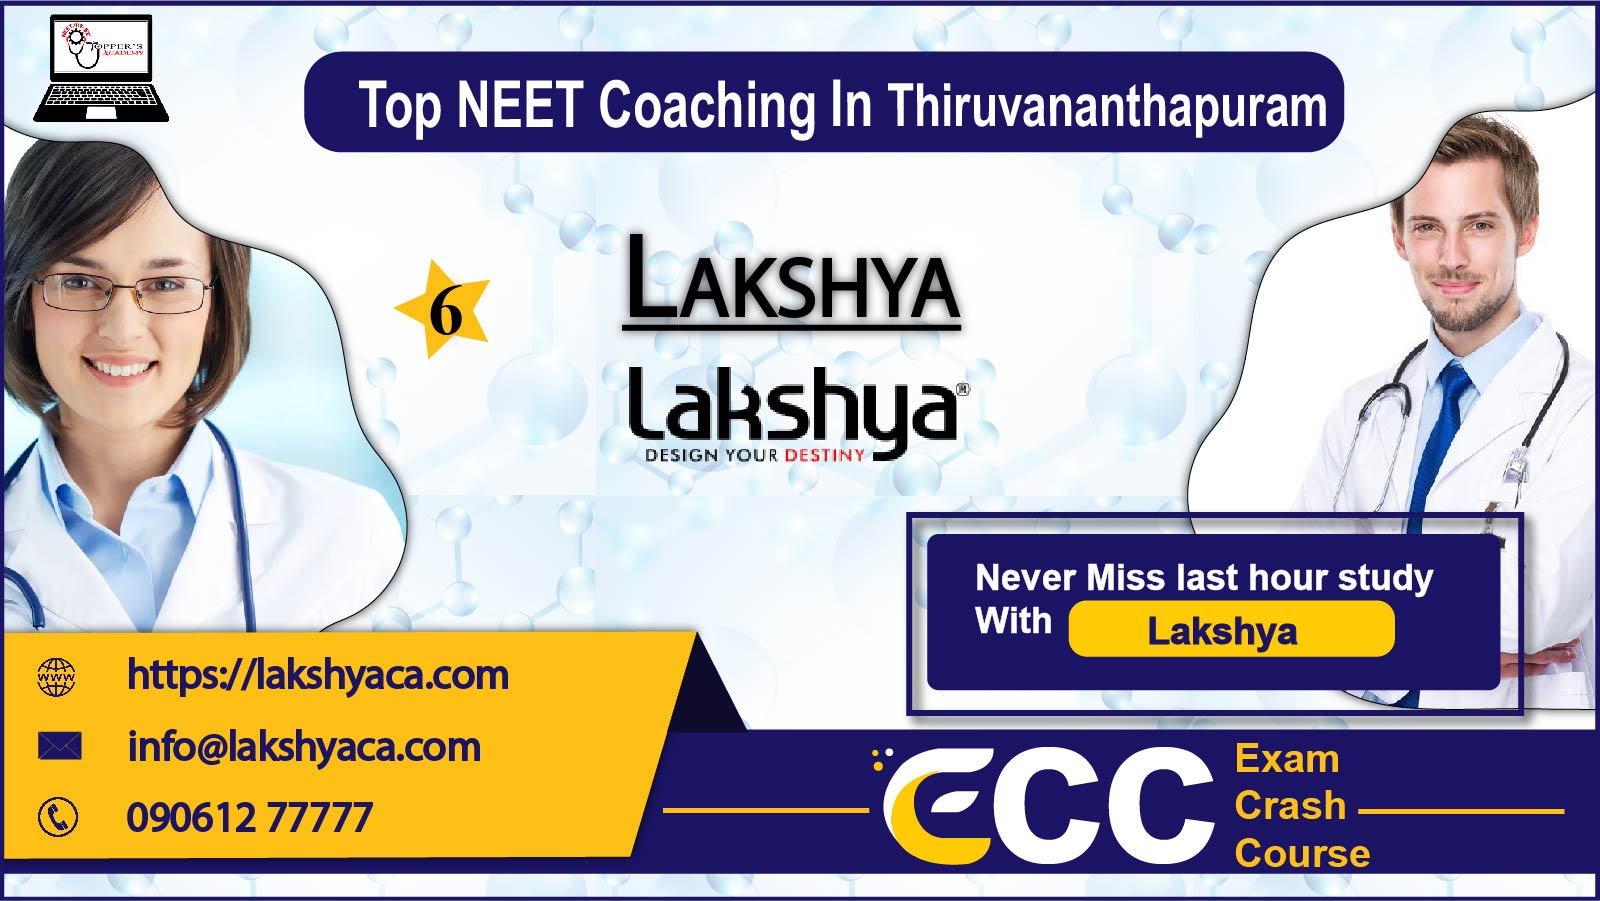 Lakshya NEET Coaching in Thiruvananthapuram